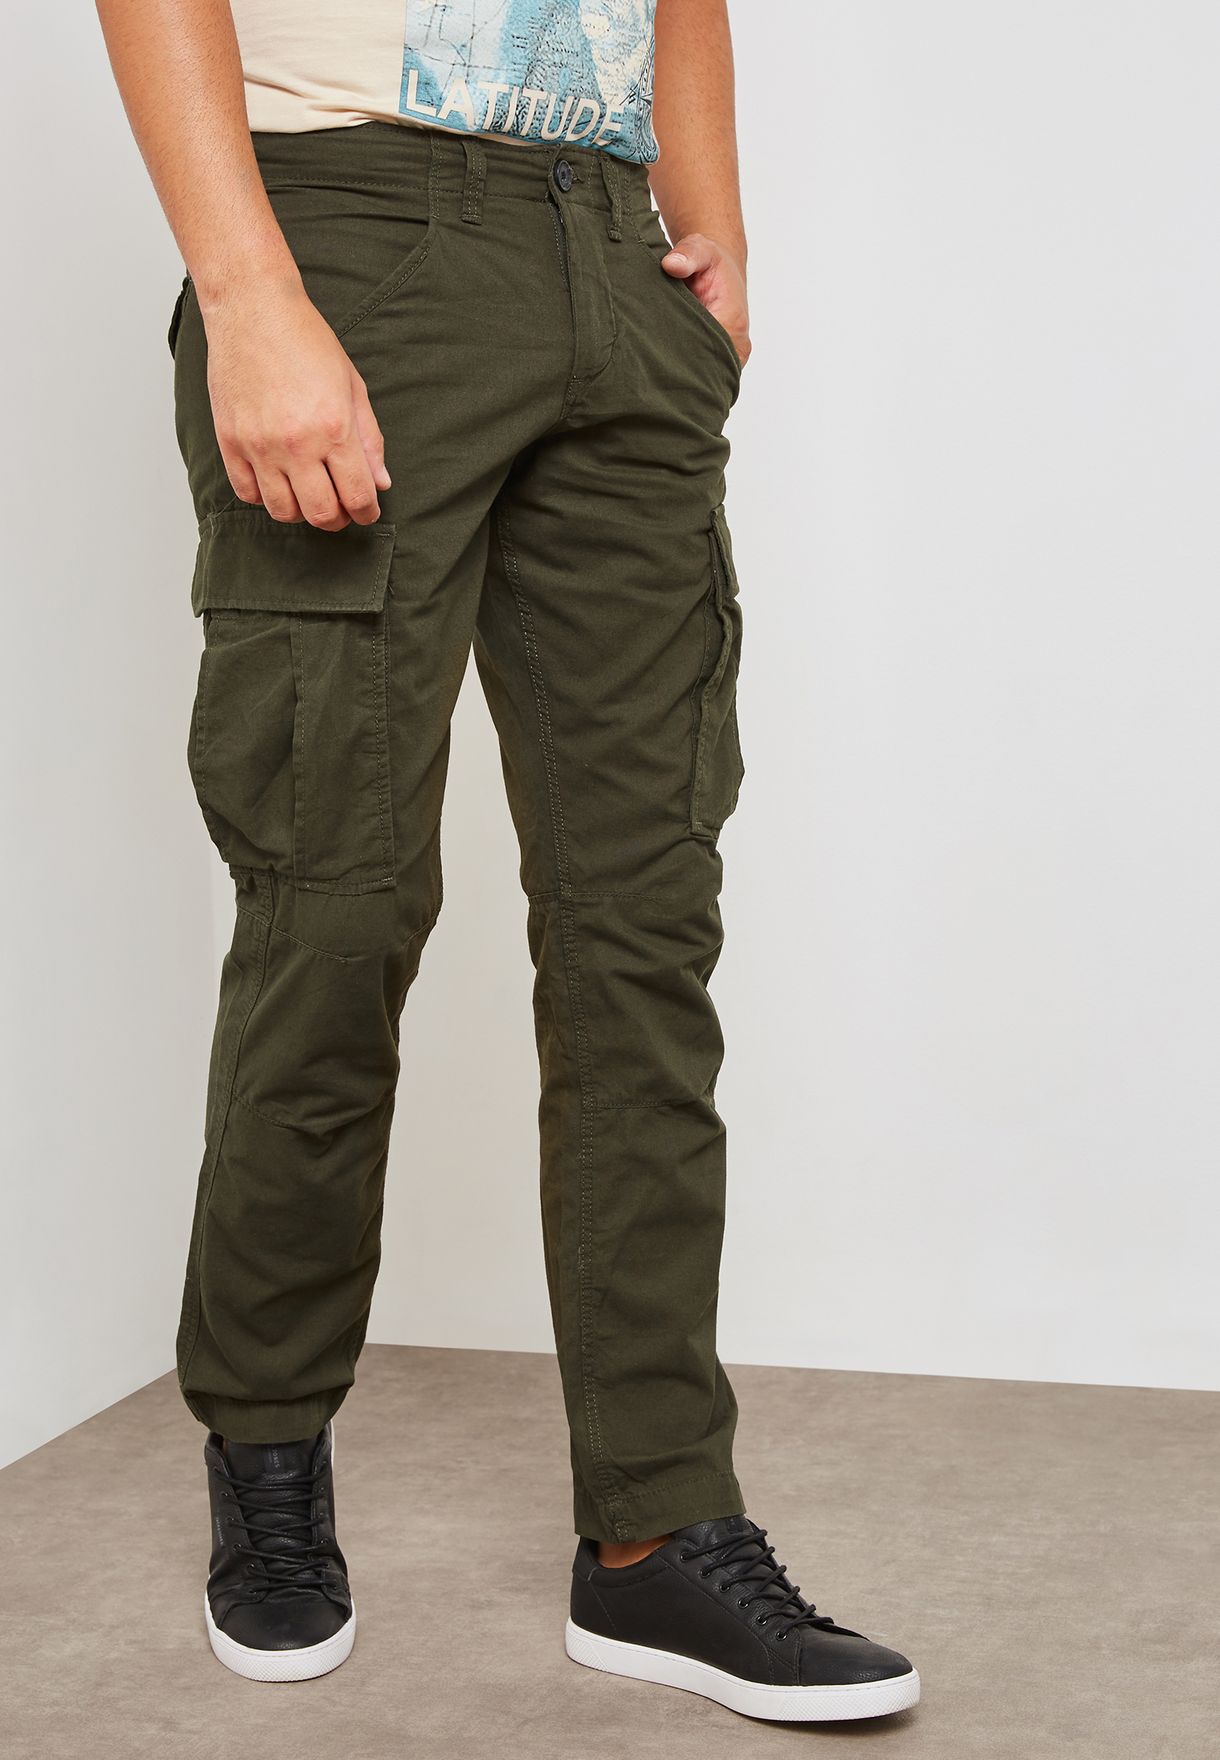 men's canvas cargo pants